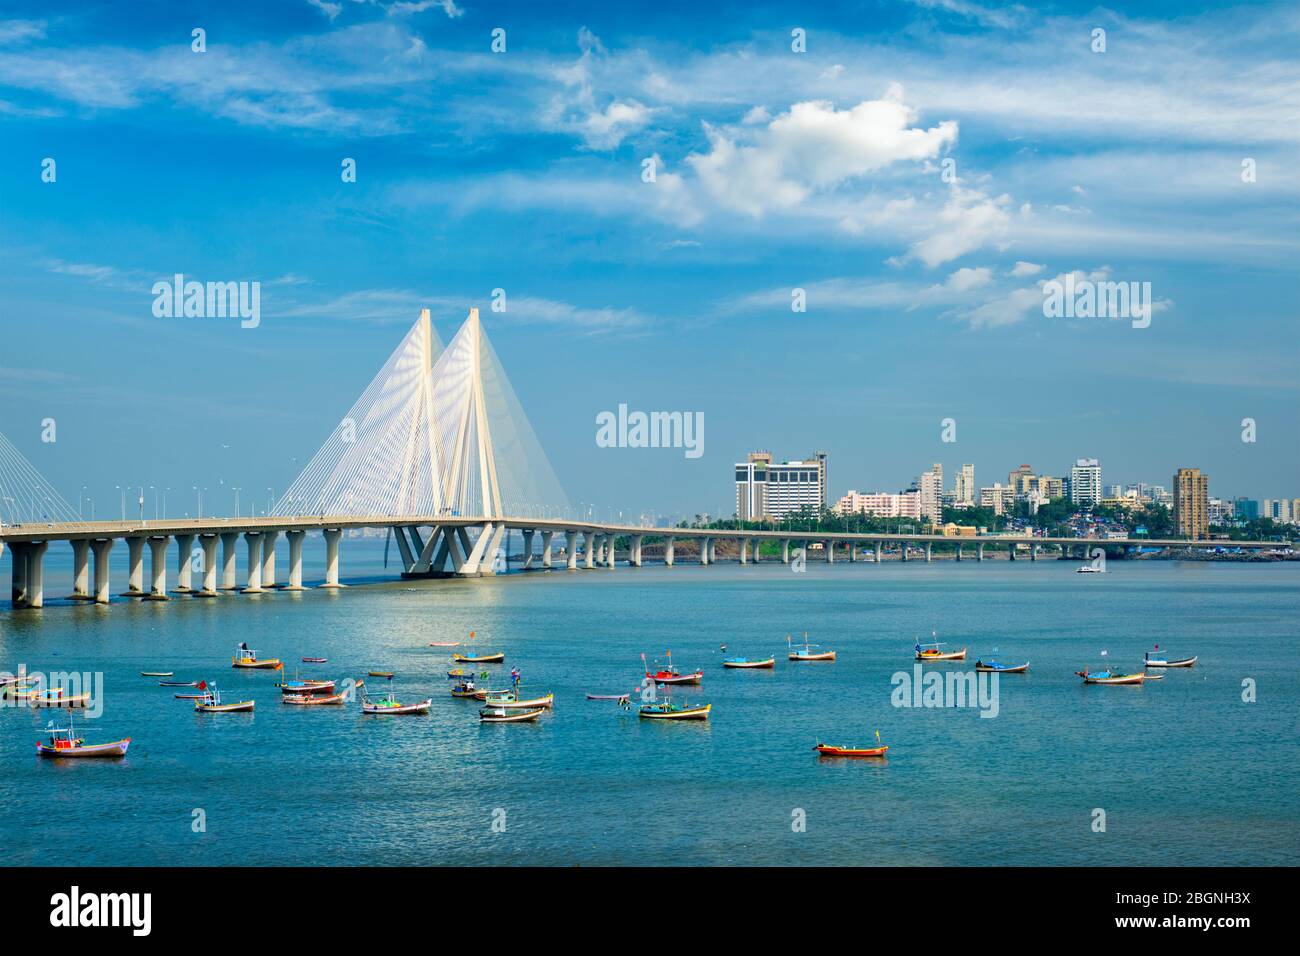 Bandra - pont Worli Sea Link avec vue sur les bateaux de pêche depuis le fort de Bandra. Mumbai, Inde Banque D'Images